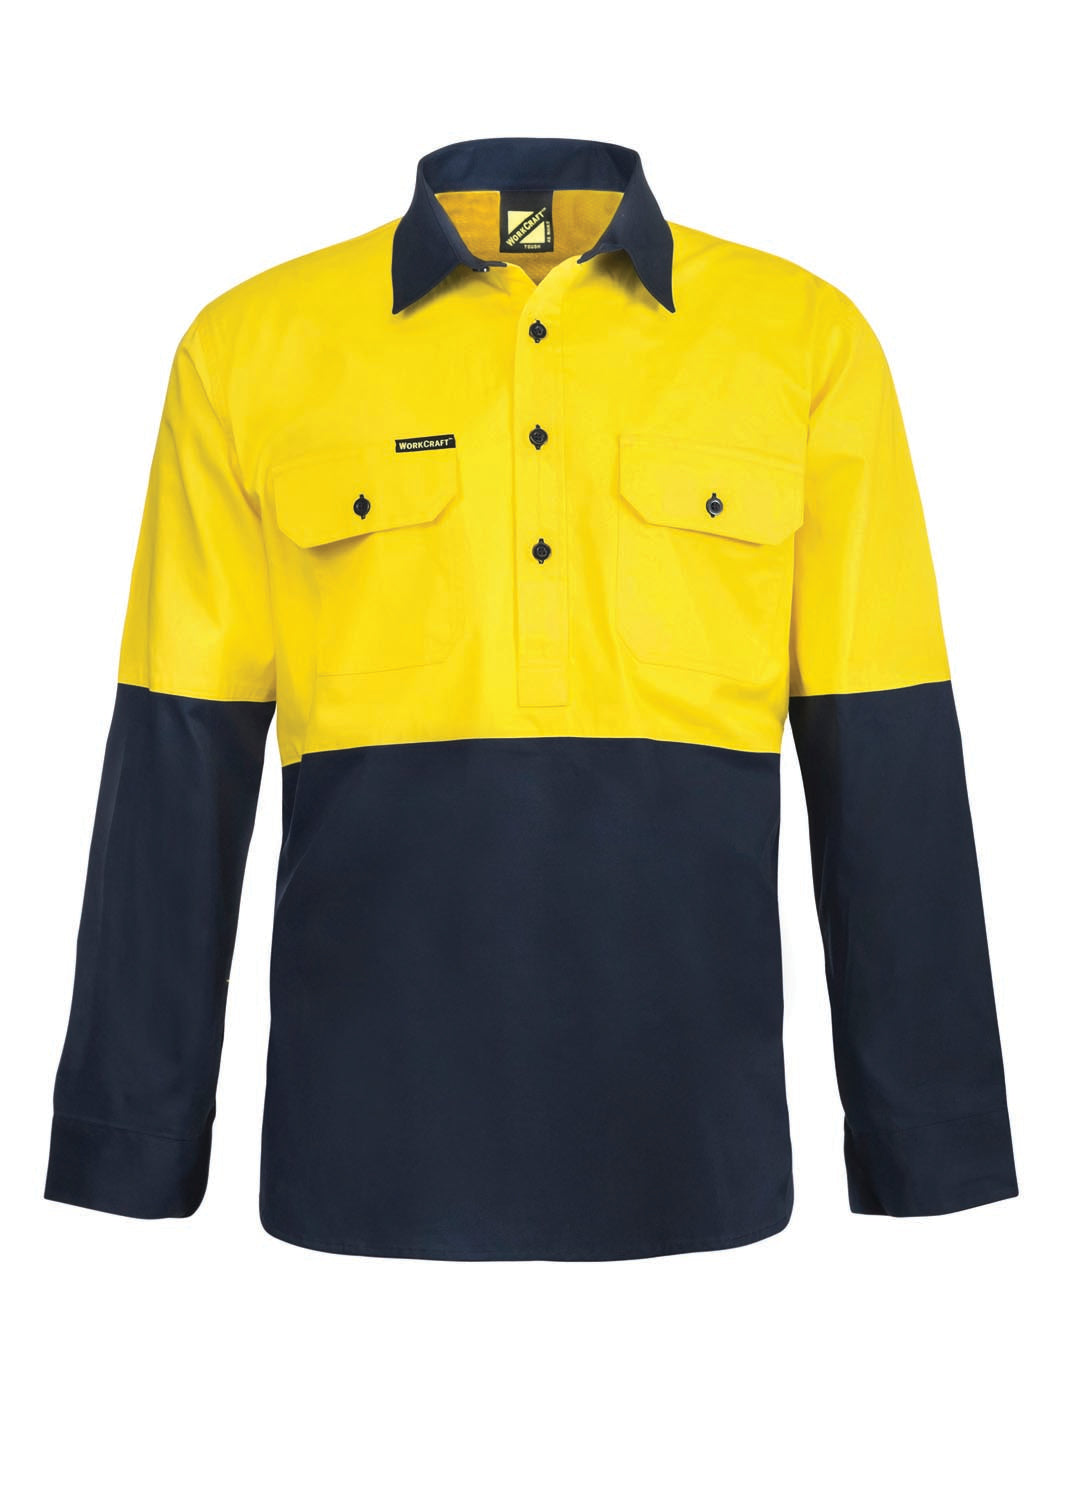 WS4255 custom vented tradie work shirt - Yellow